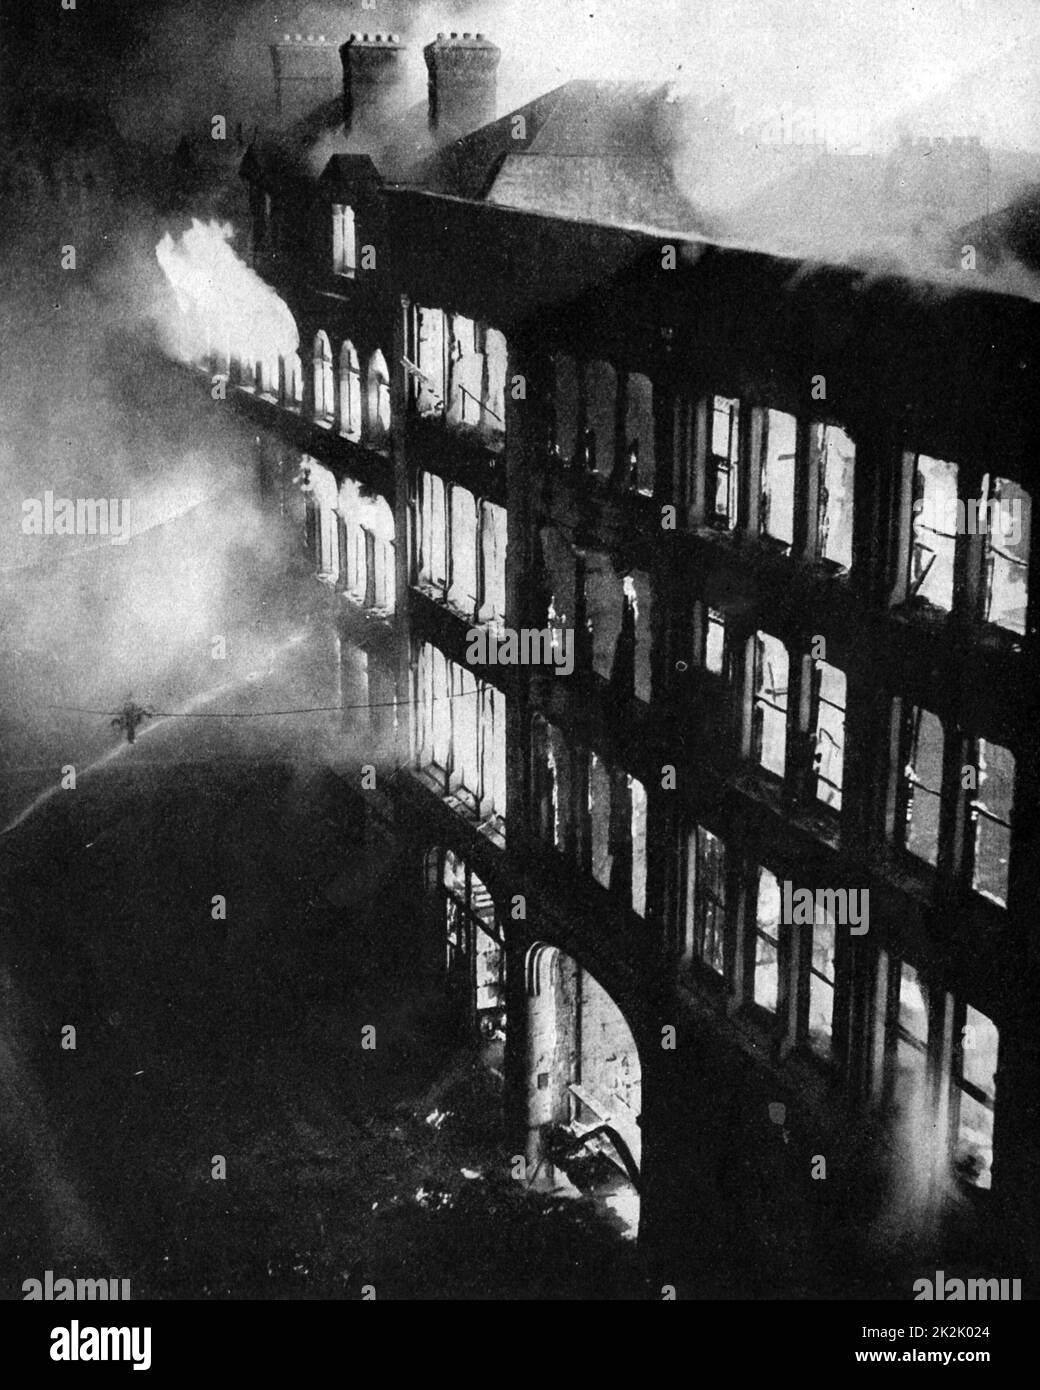 Magazzini nella parte orientale di Londra bruciati, messo in luce dalle bombe caduto da Lufwaffle (forze aeree tedesche) aerei durante il Blitz la notte del 24-25 agosto 1940. Vigili del fuoco londinesi che tentano di spegnere le fiamme con manichette. Danni. Foto Stock